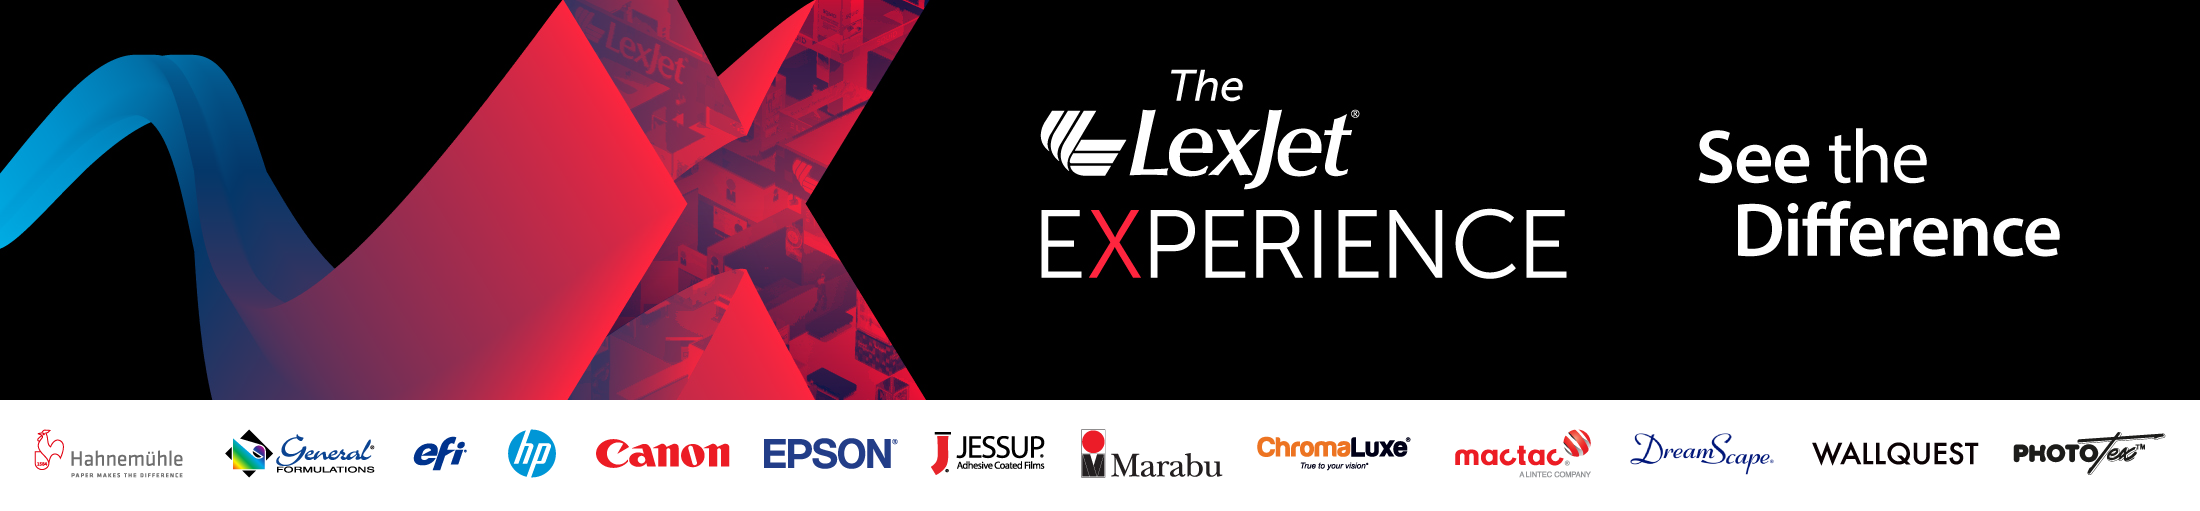 LJ_Experience_10-23-21_01_Landpg_2200v2